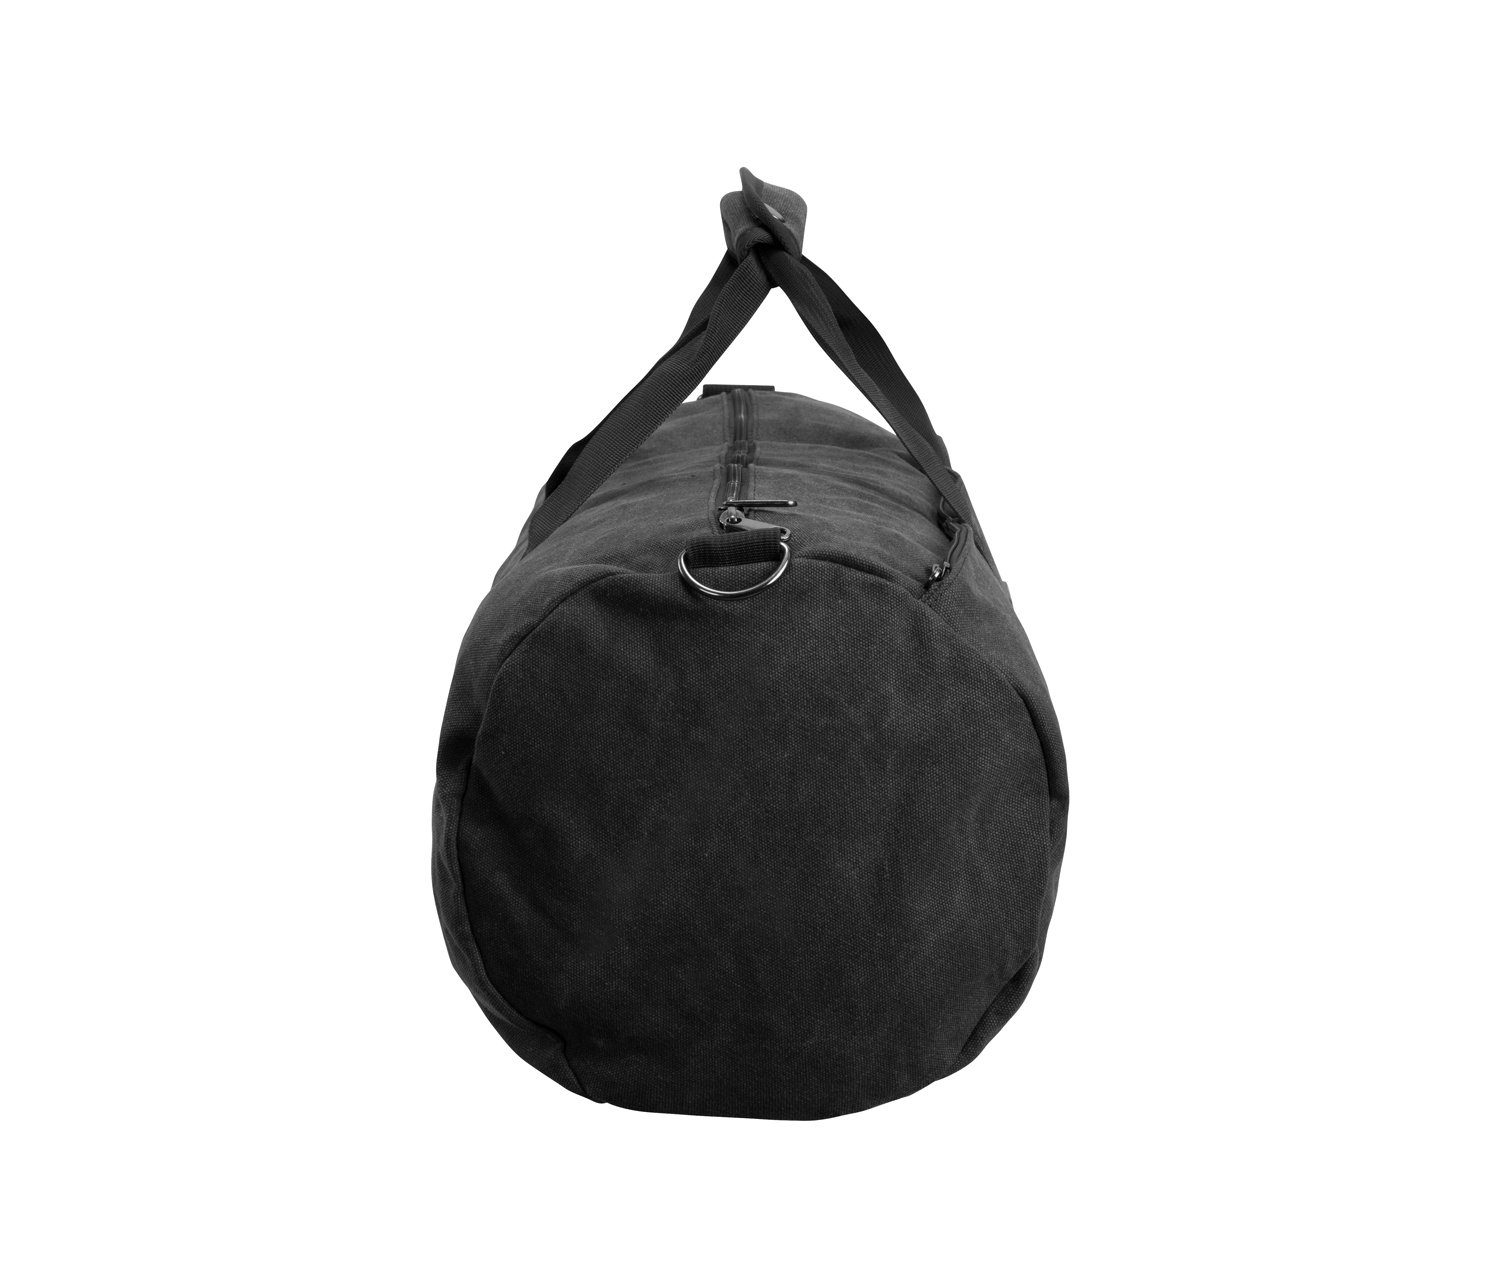 - Sporttasche, Canvas Duffel Grey Manufaktur13 Sporttasche Barrel Fassungsvermögen Bag, Dark 24L Bag